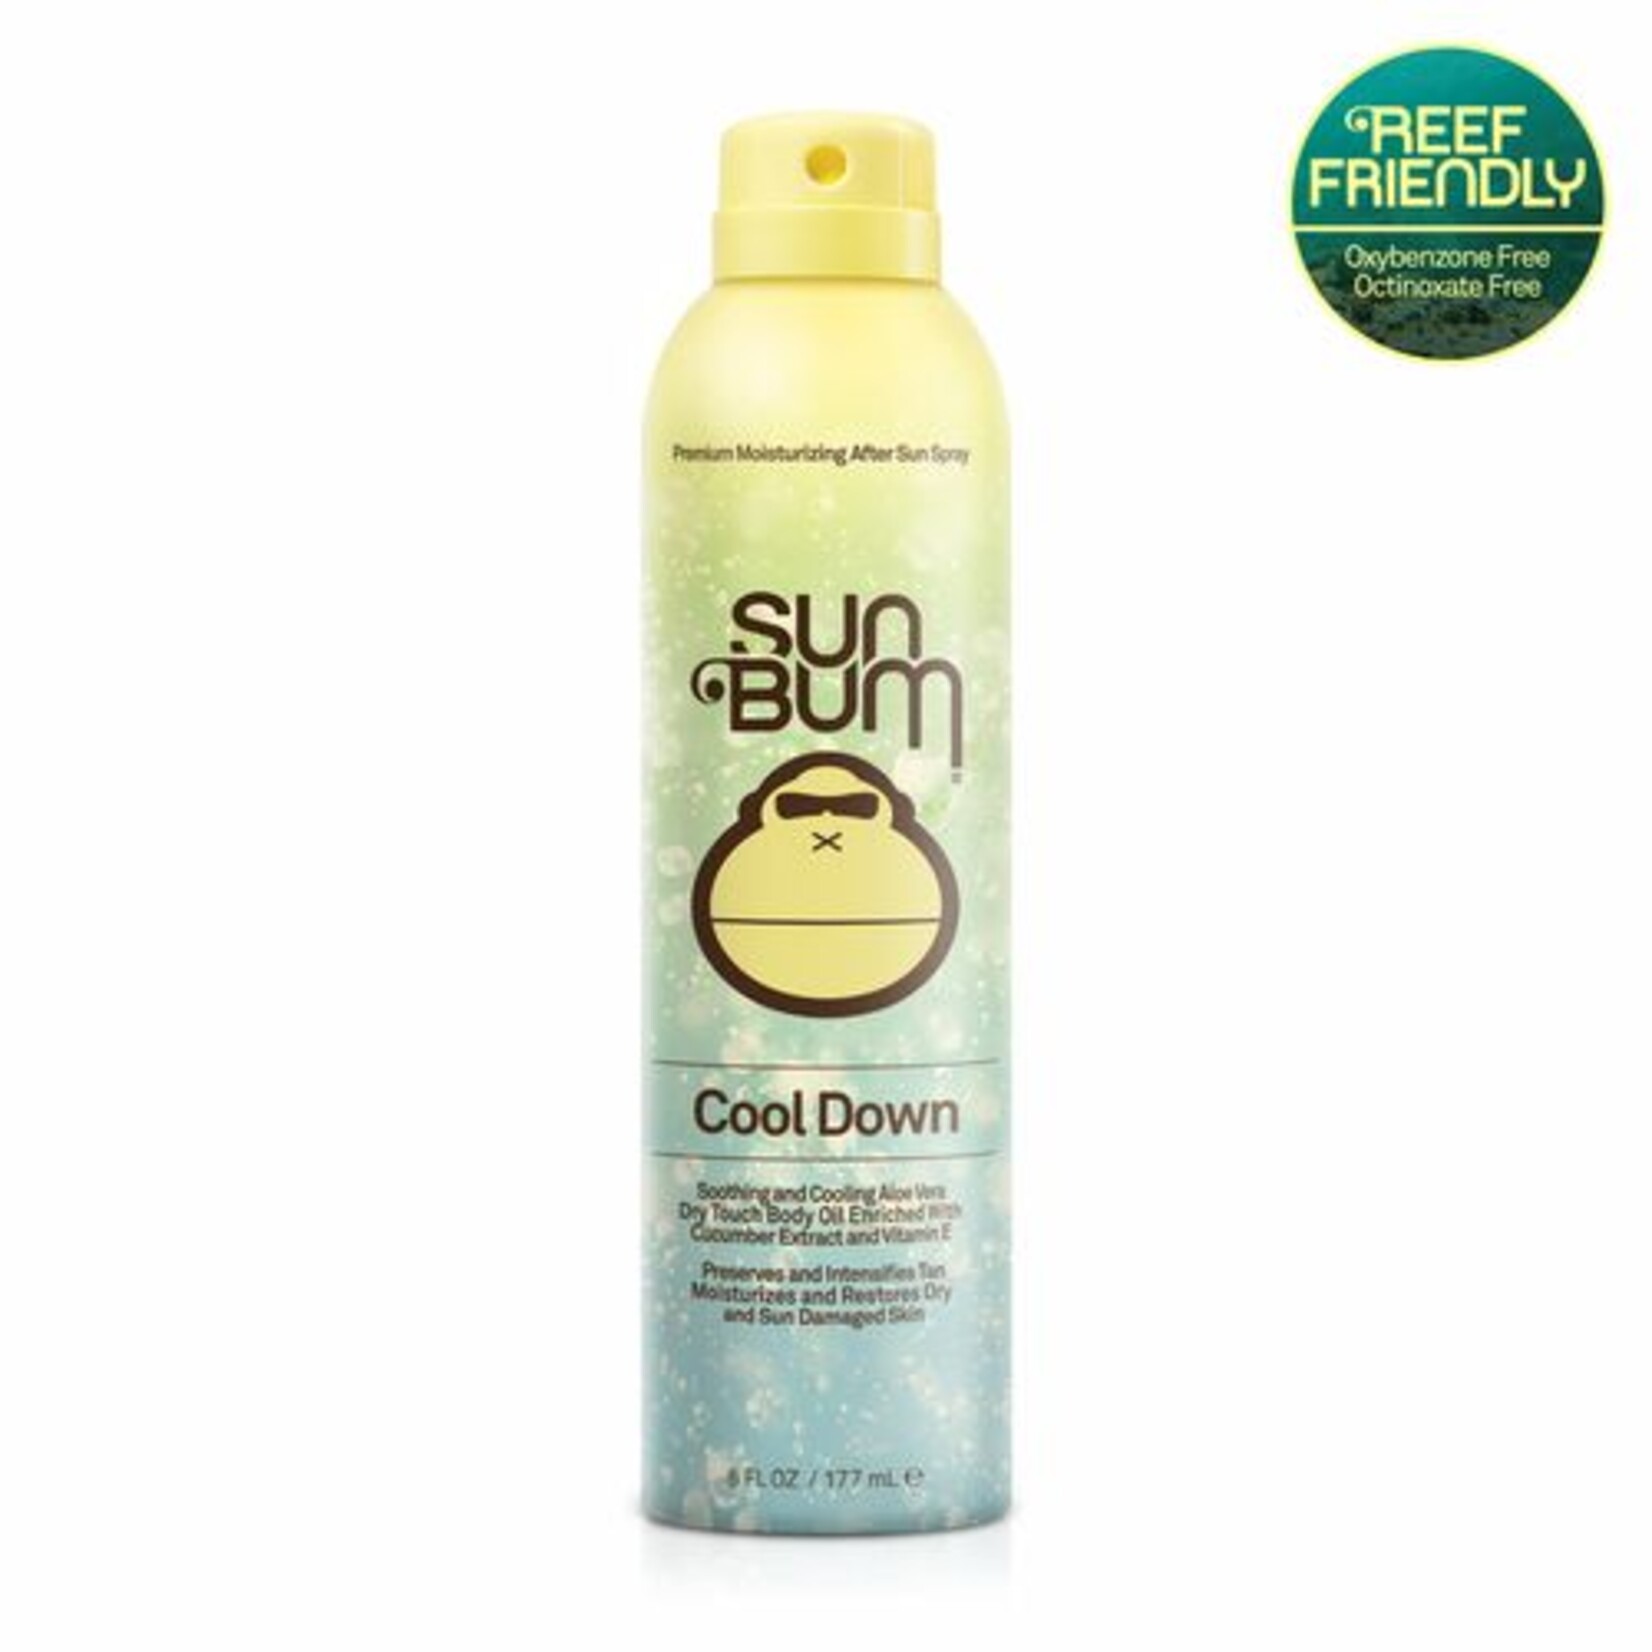 Sun Bum SunBum Cool Down Spray 6oz